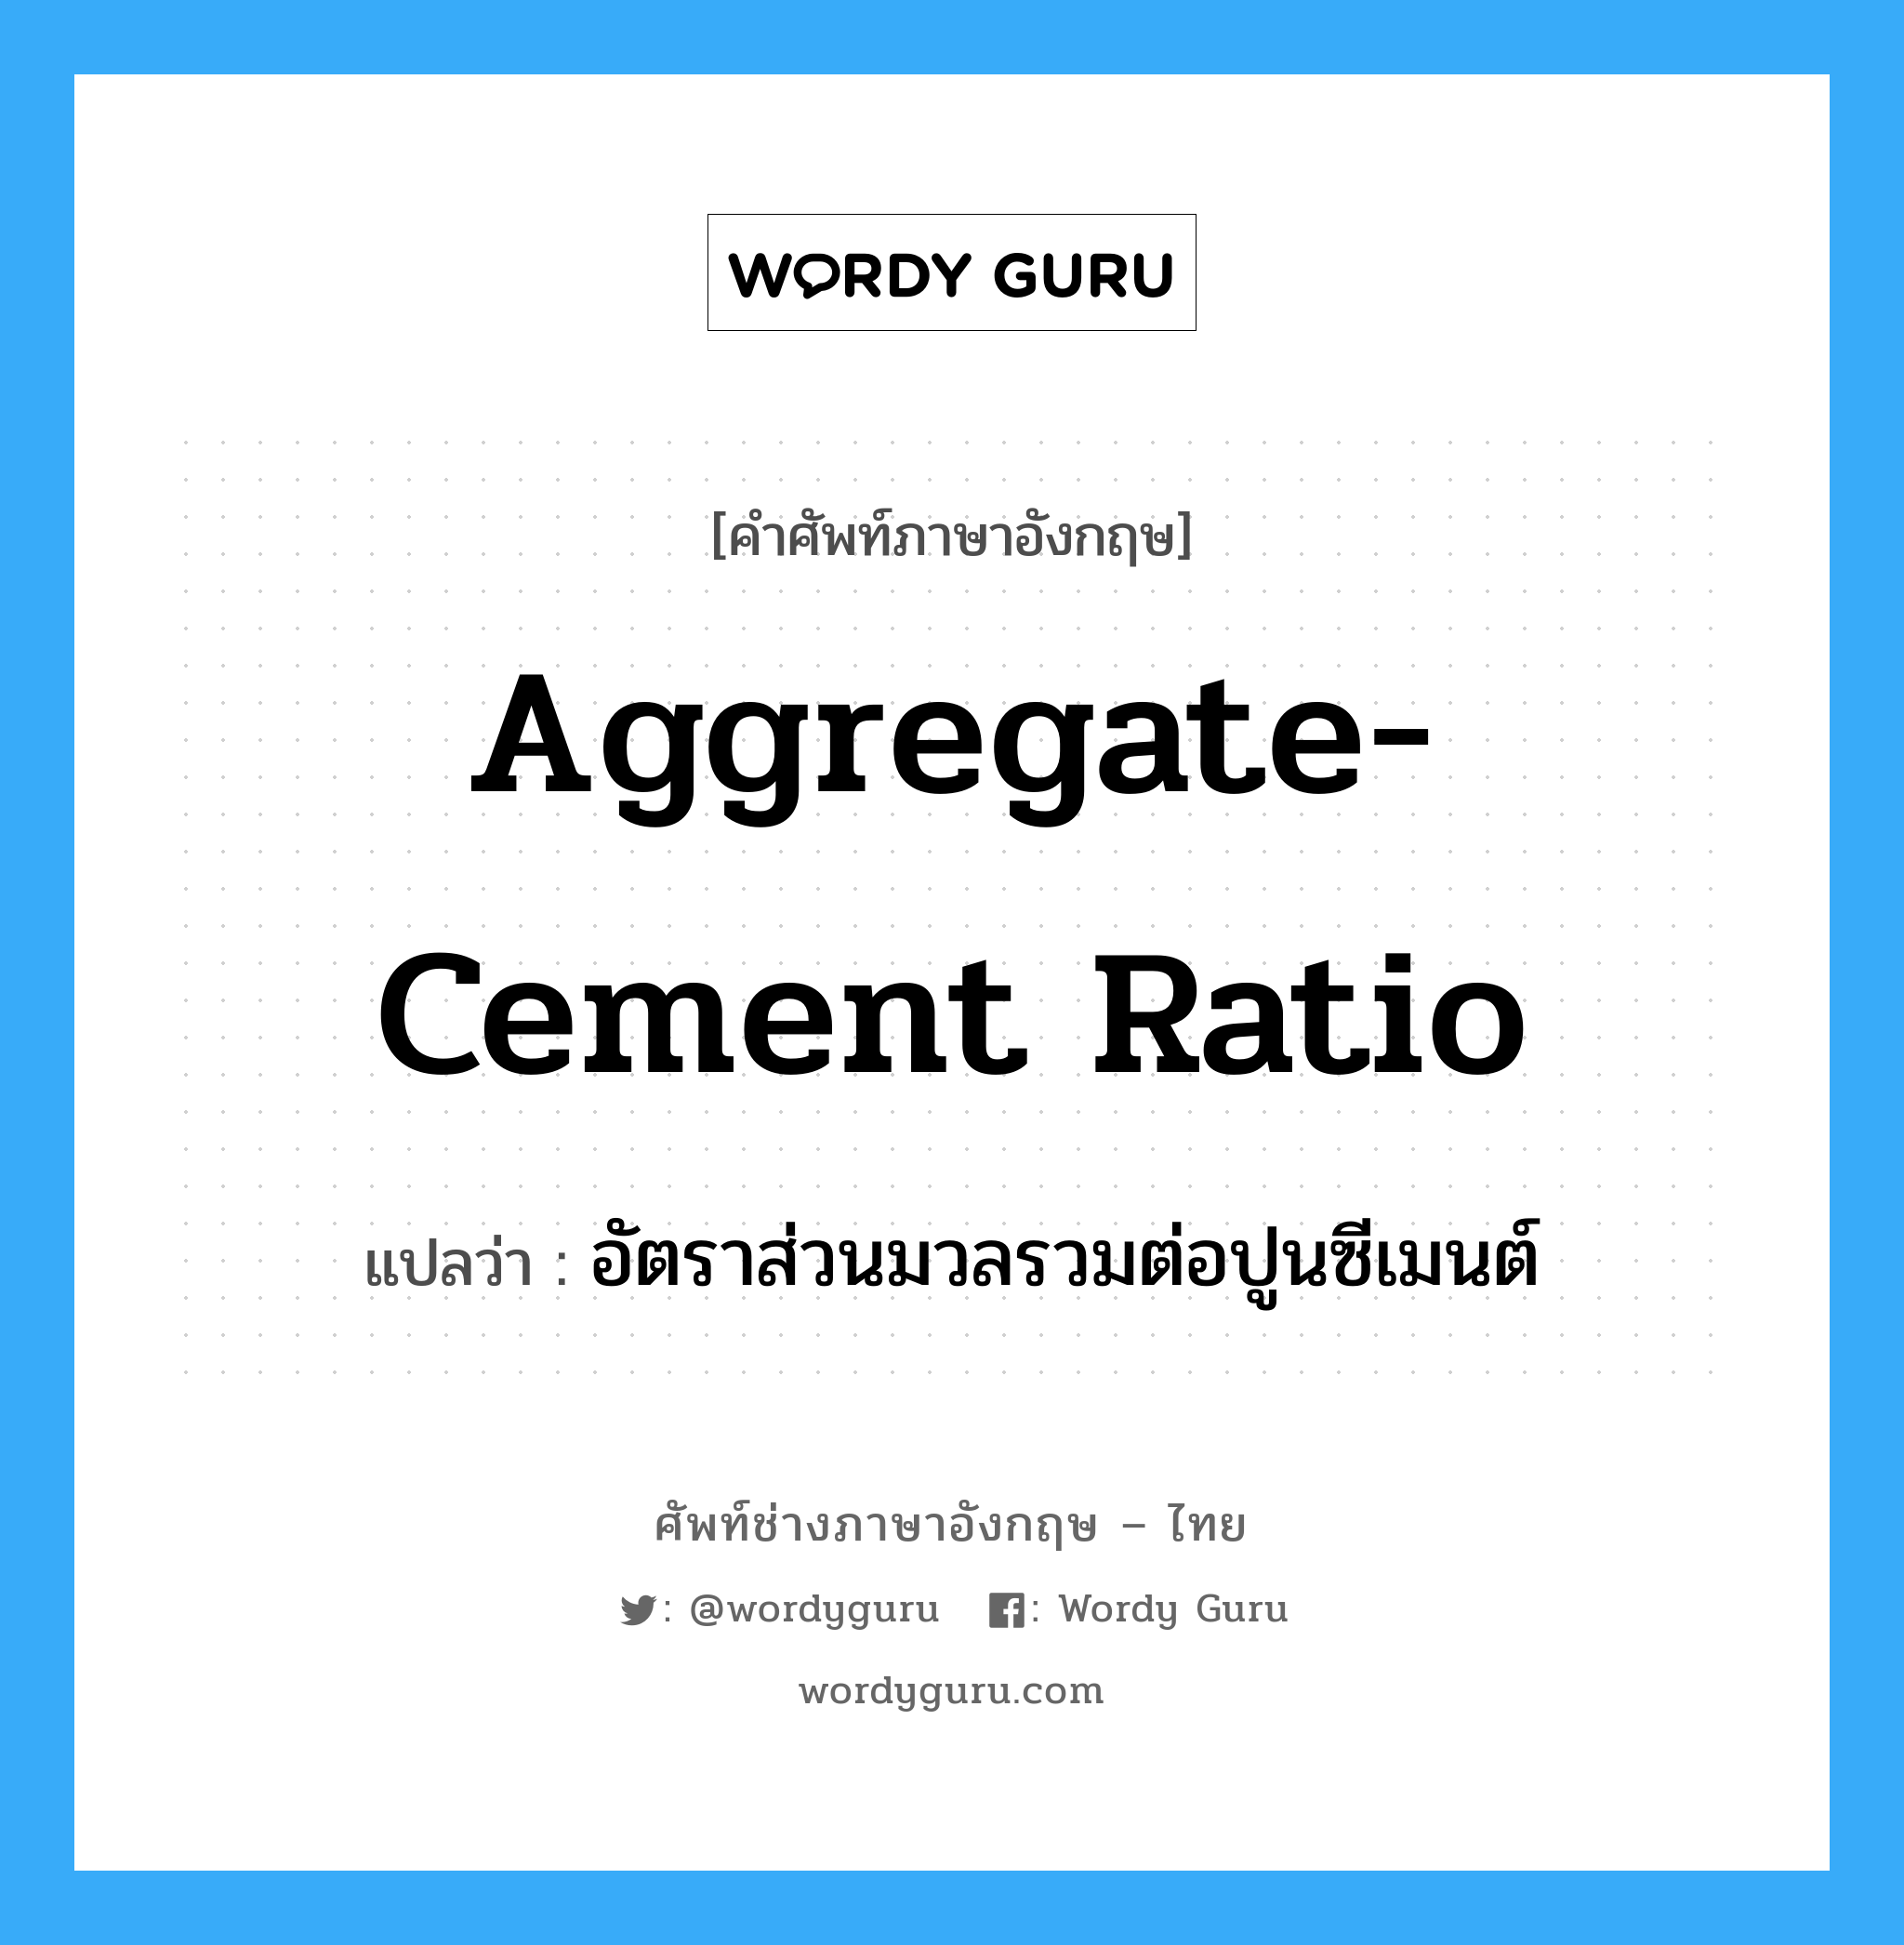 aggregate-cement ratio แปลว่า?, คำศัพท์ช่างภาษาอังกฤษ - ไทย aggregate-cement ratio คำศัพท์ภาษาอังกฤษ aggregate-cement ratio แปลว่า อัตราส่วนมวลรวมต่อปูนซีเมนต์